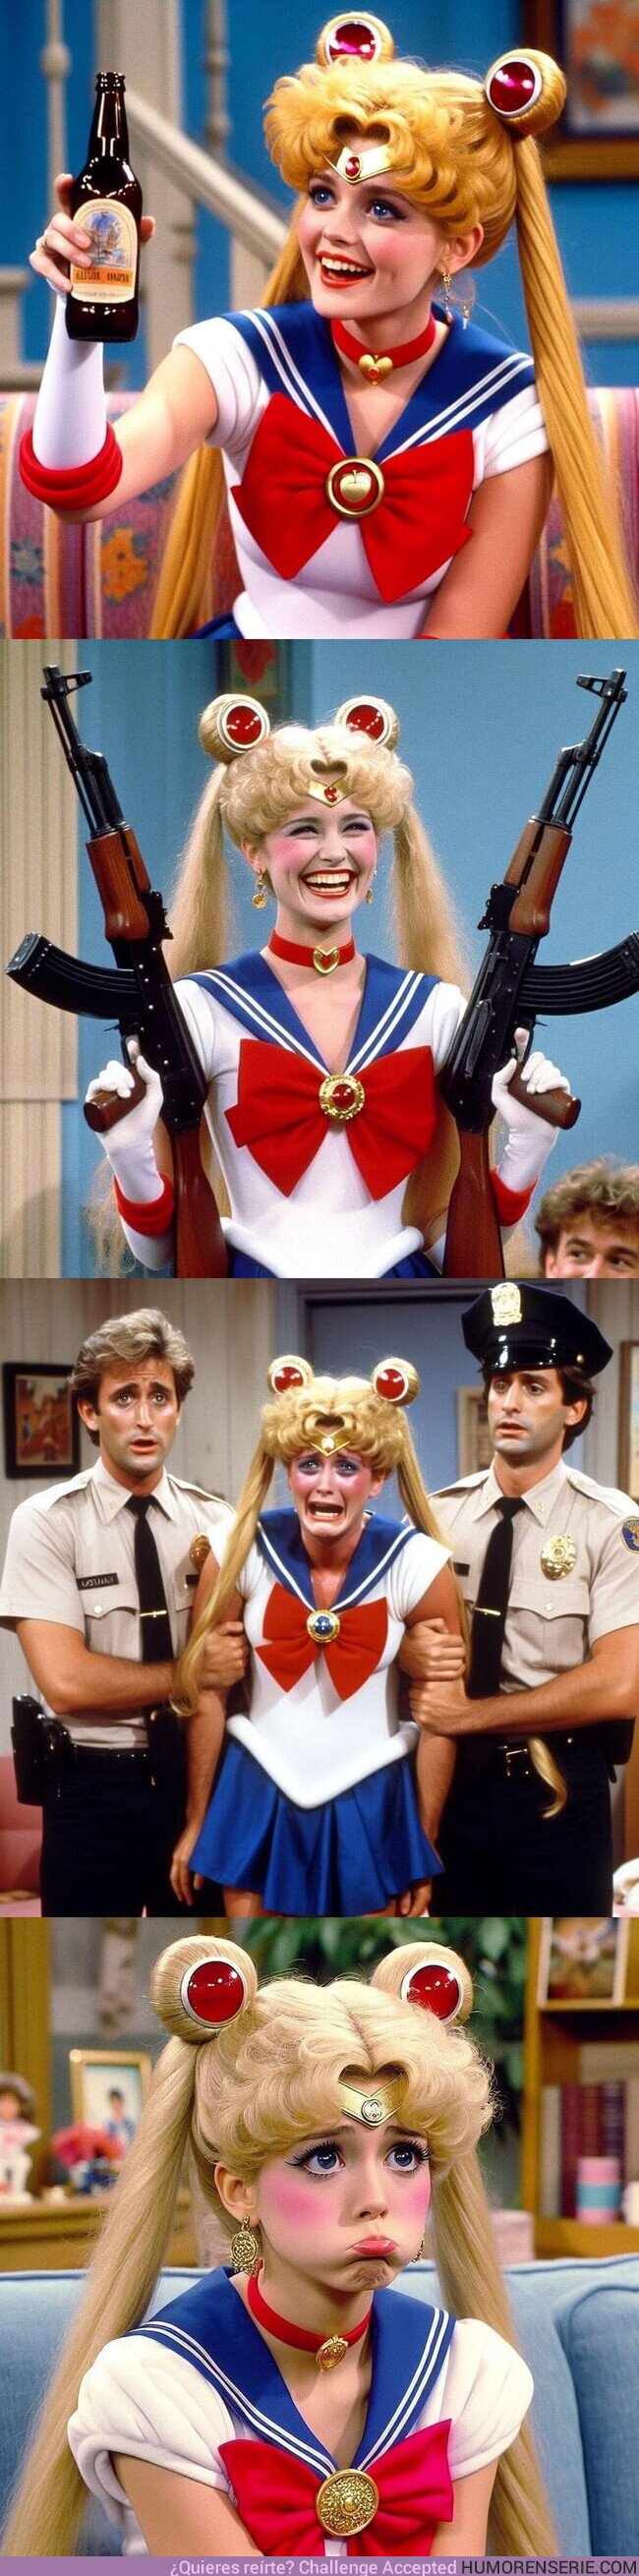 148478 - Como se vería #SailorMoon si fuese una sitcom de los 90s, según una IA, por @JuanitoSay